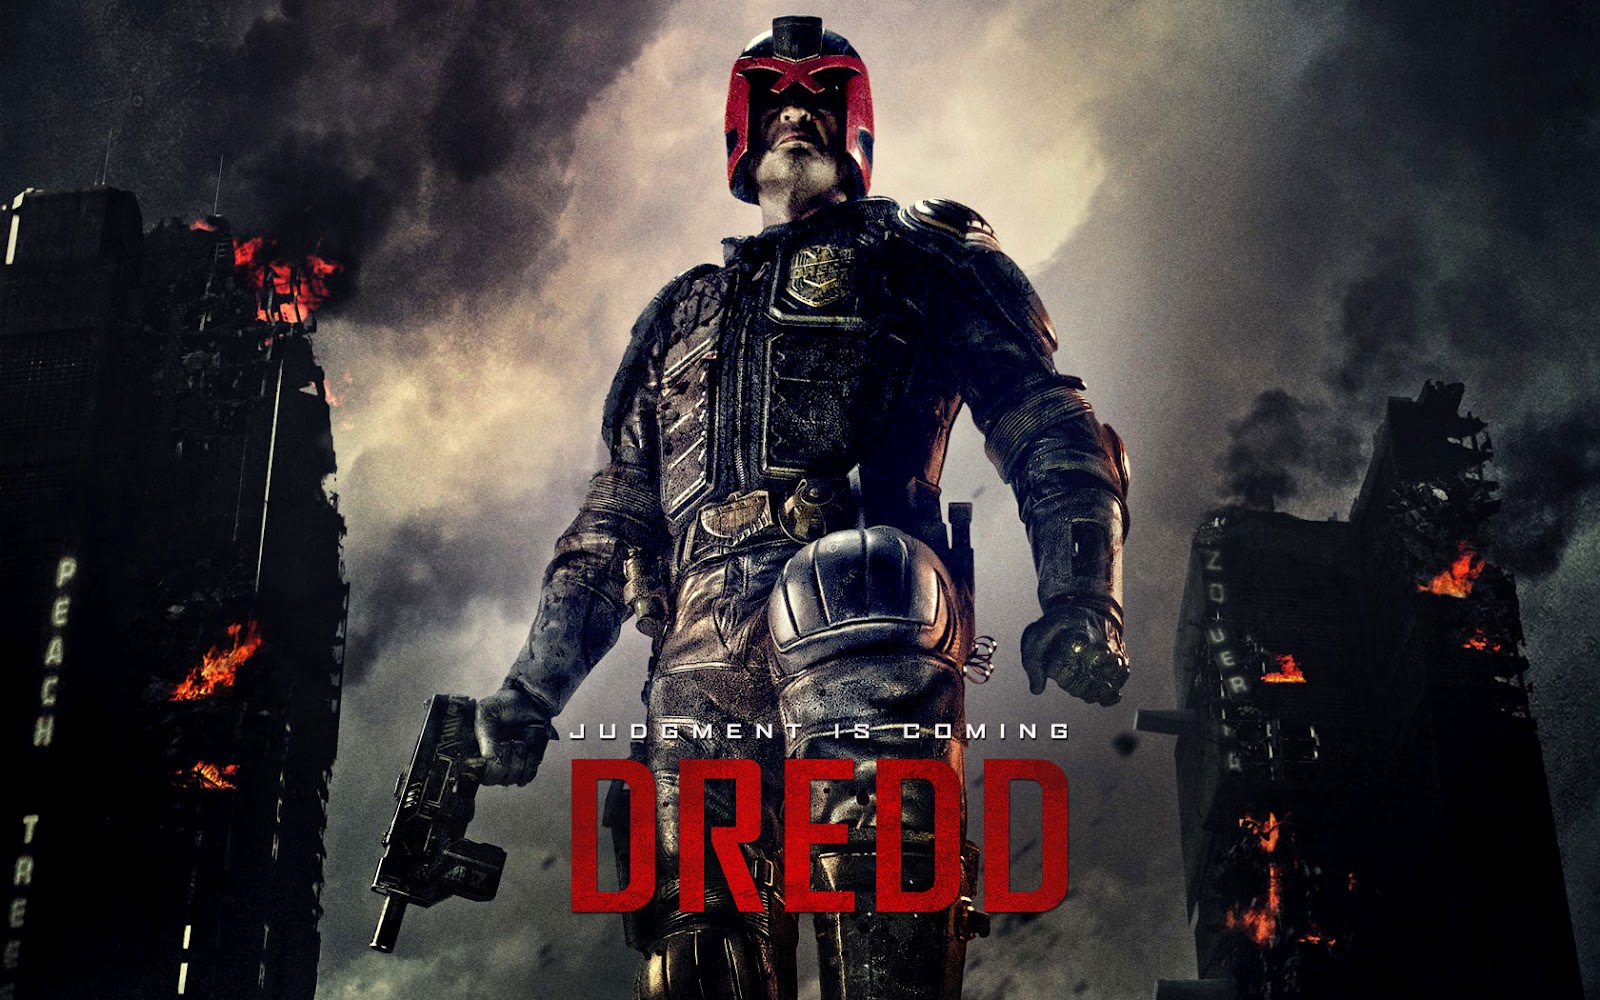 Dredd 3D [Eng.] 2012